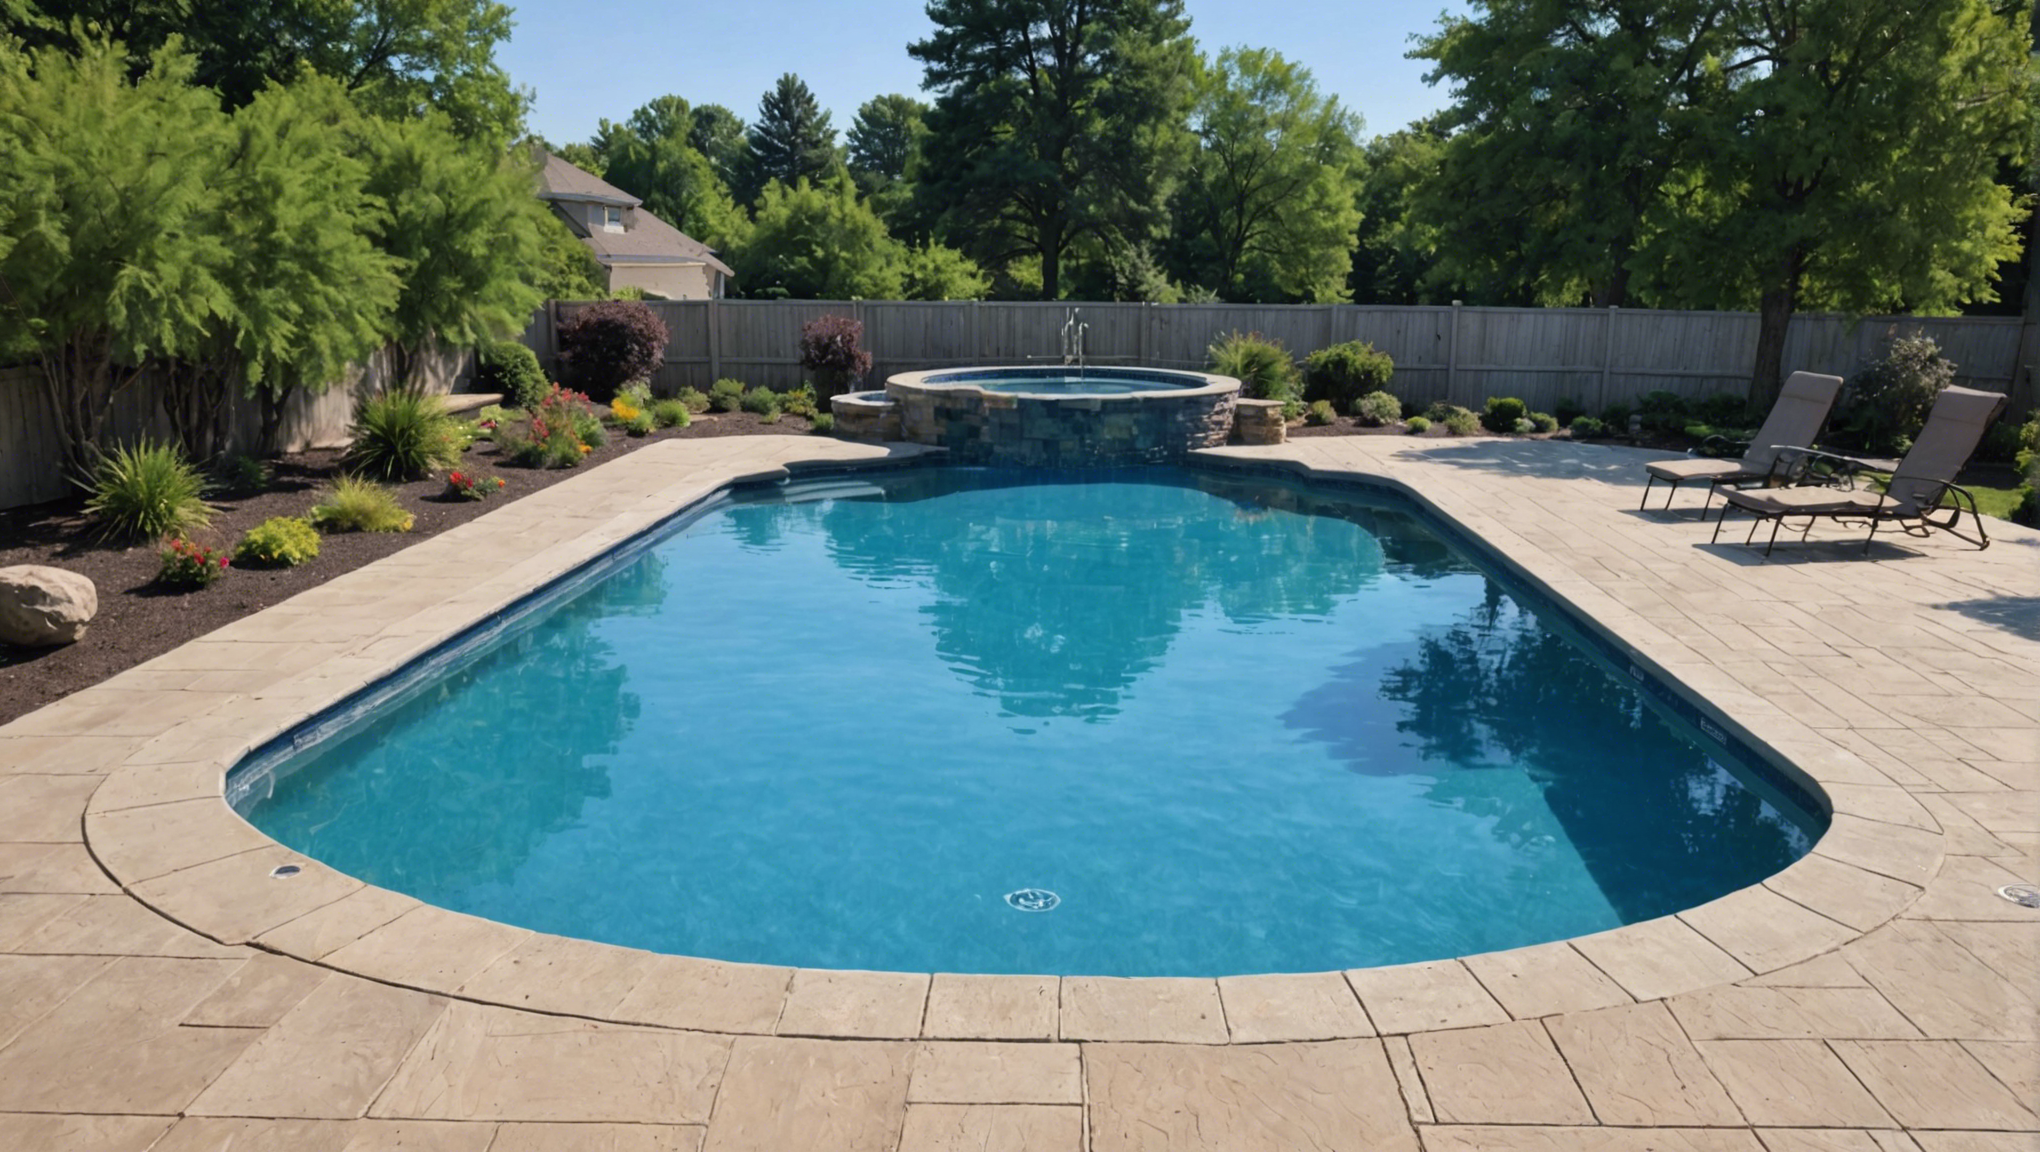 découvrez comment redonner à votre piscine sa couleur bleue d'origine et retrouvez la fraîcheur et la clarté de votre bassin avec nos conseils pratiques.